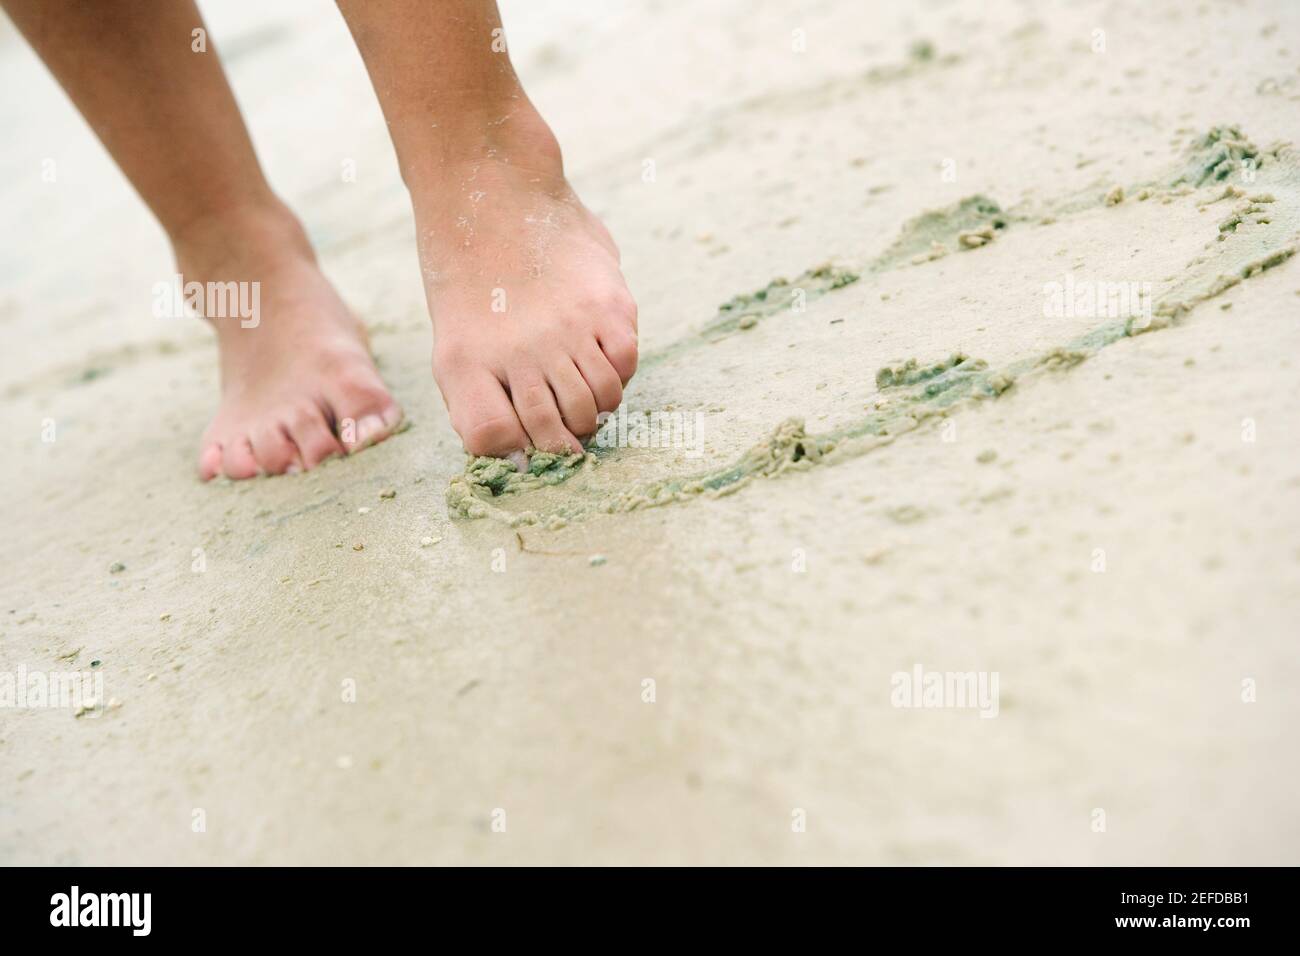 Vue en coupe basse d'une femme dessinant dans le sable avec son orteil  Photo Stock - Alamy